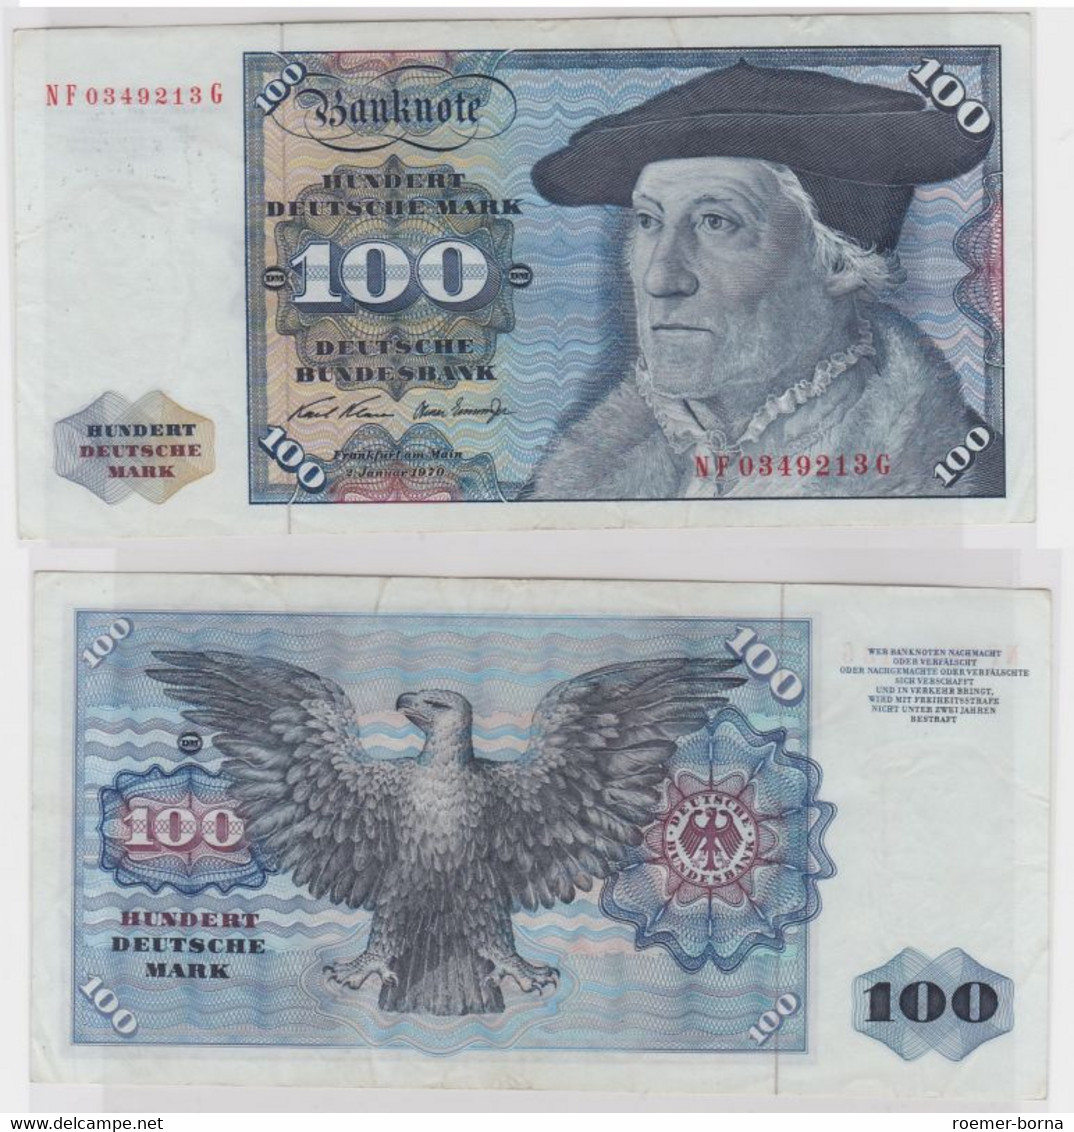 T146010 Banknote 100 DM Deutsche Mark Ro. 273b Schein 2.Jan 1970 KN NF 0349213 G - 100 Deutsche Mark